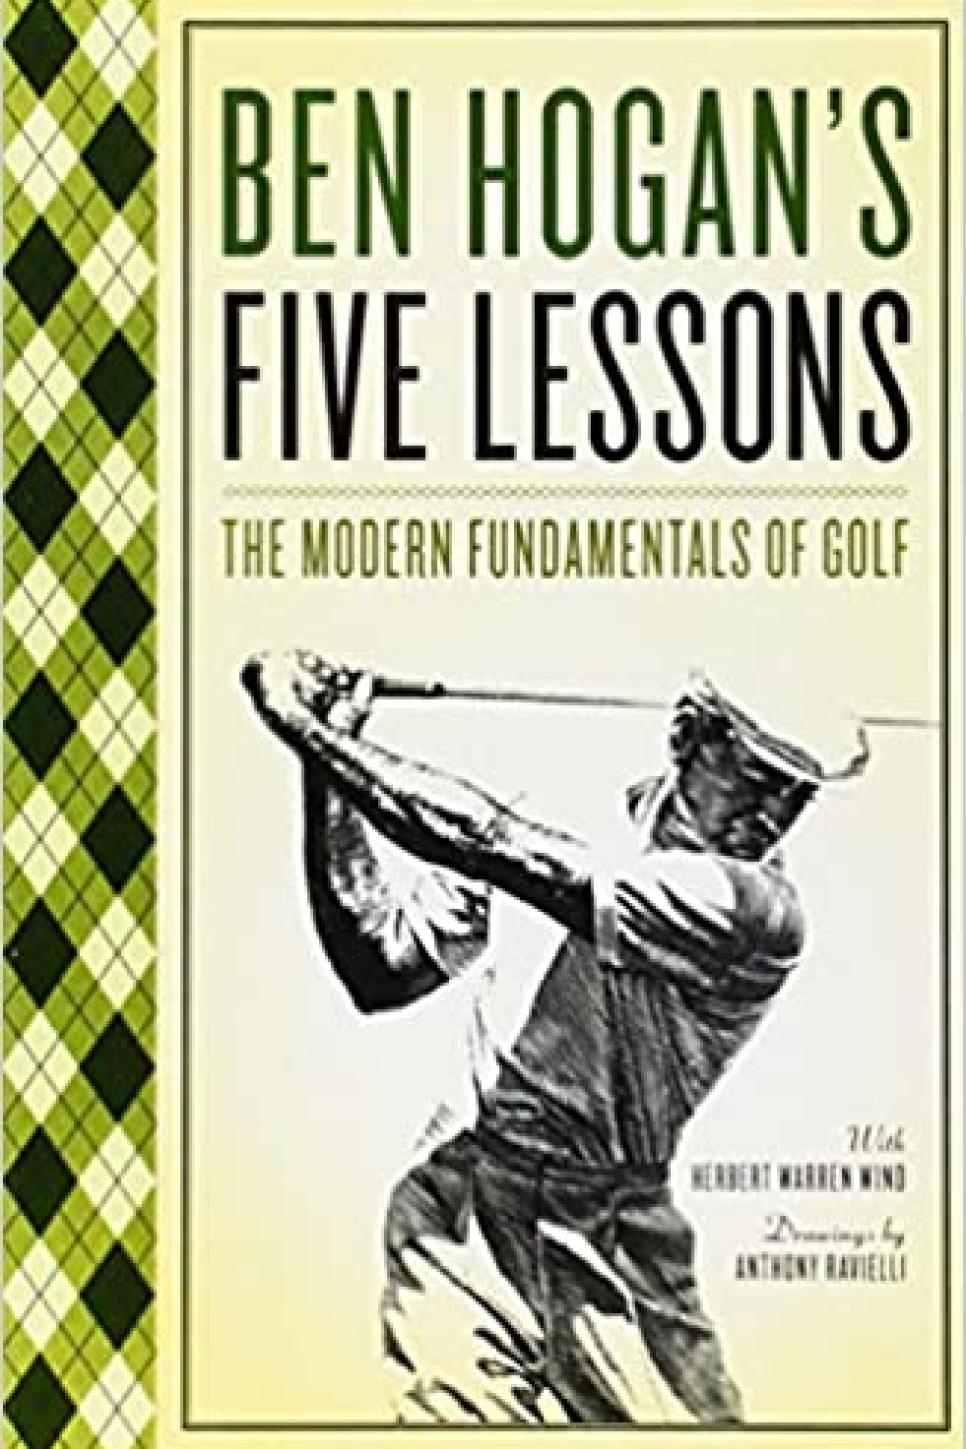 Ben Hogan's Five Lessons: The Modern Fundamentals of Golf By Ben Hogan, with Herbert Warren Wind (1957)